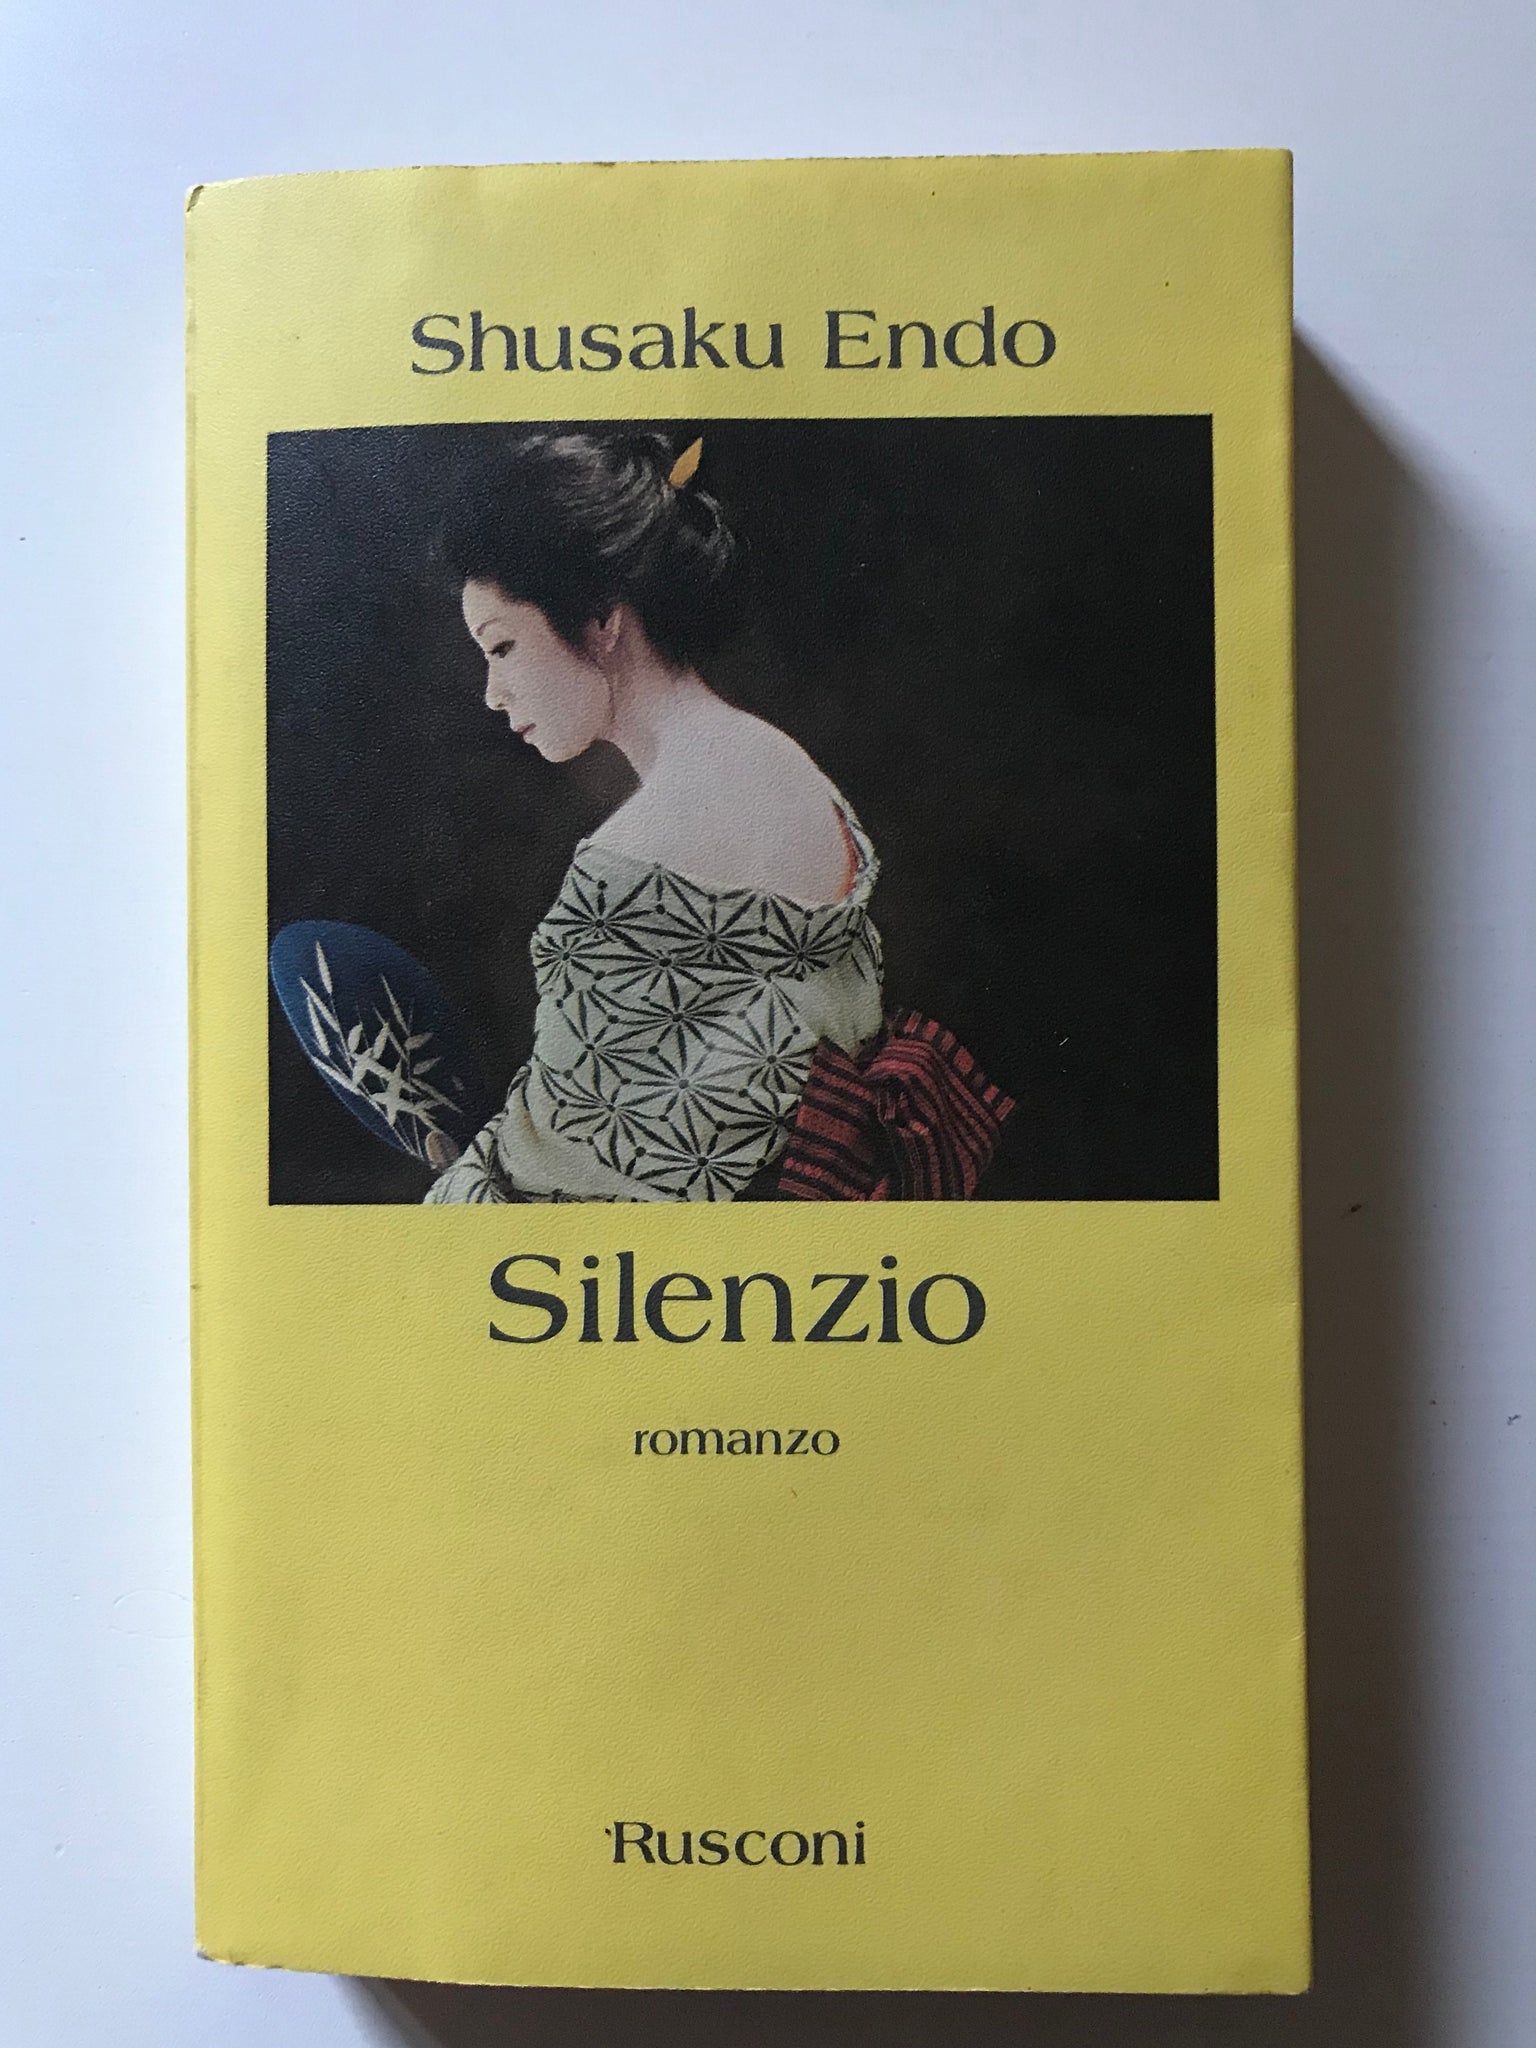 Shusako Endo - Silenzio